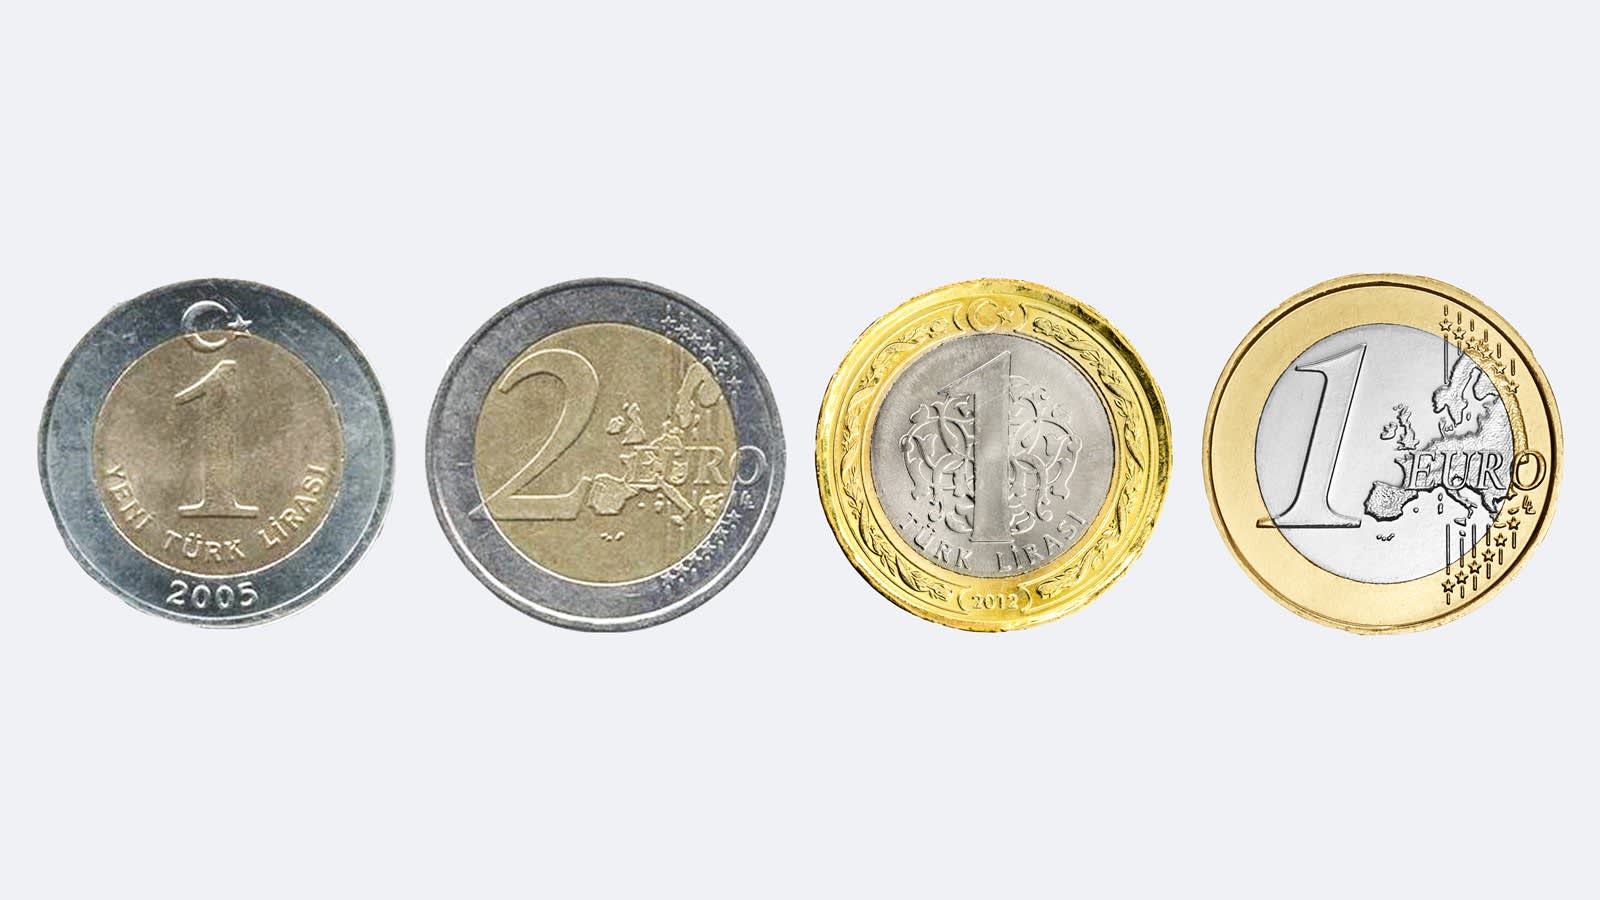 Deze buitenlandse munt líjkt op 2 eurostuk, maar is veel minder waard